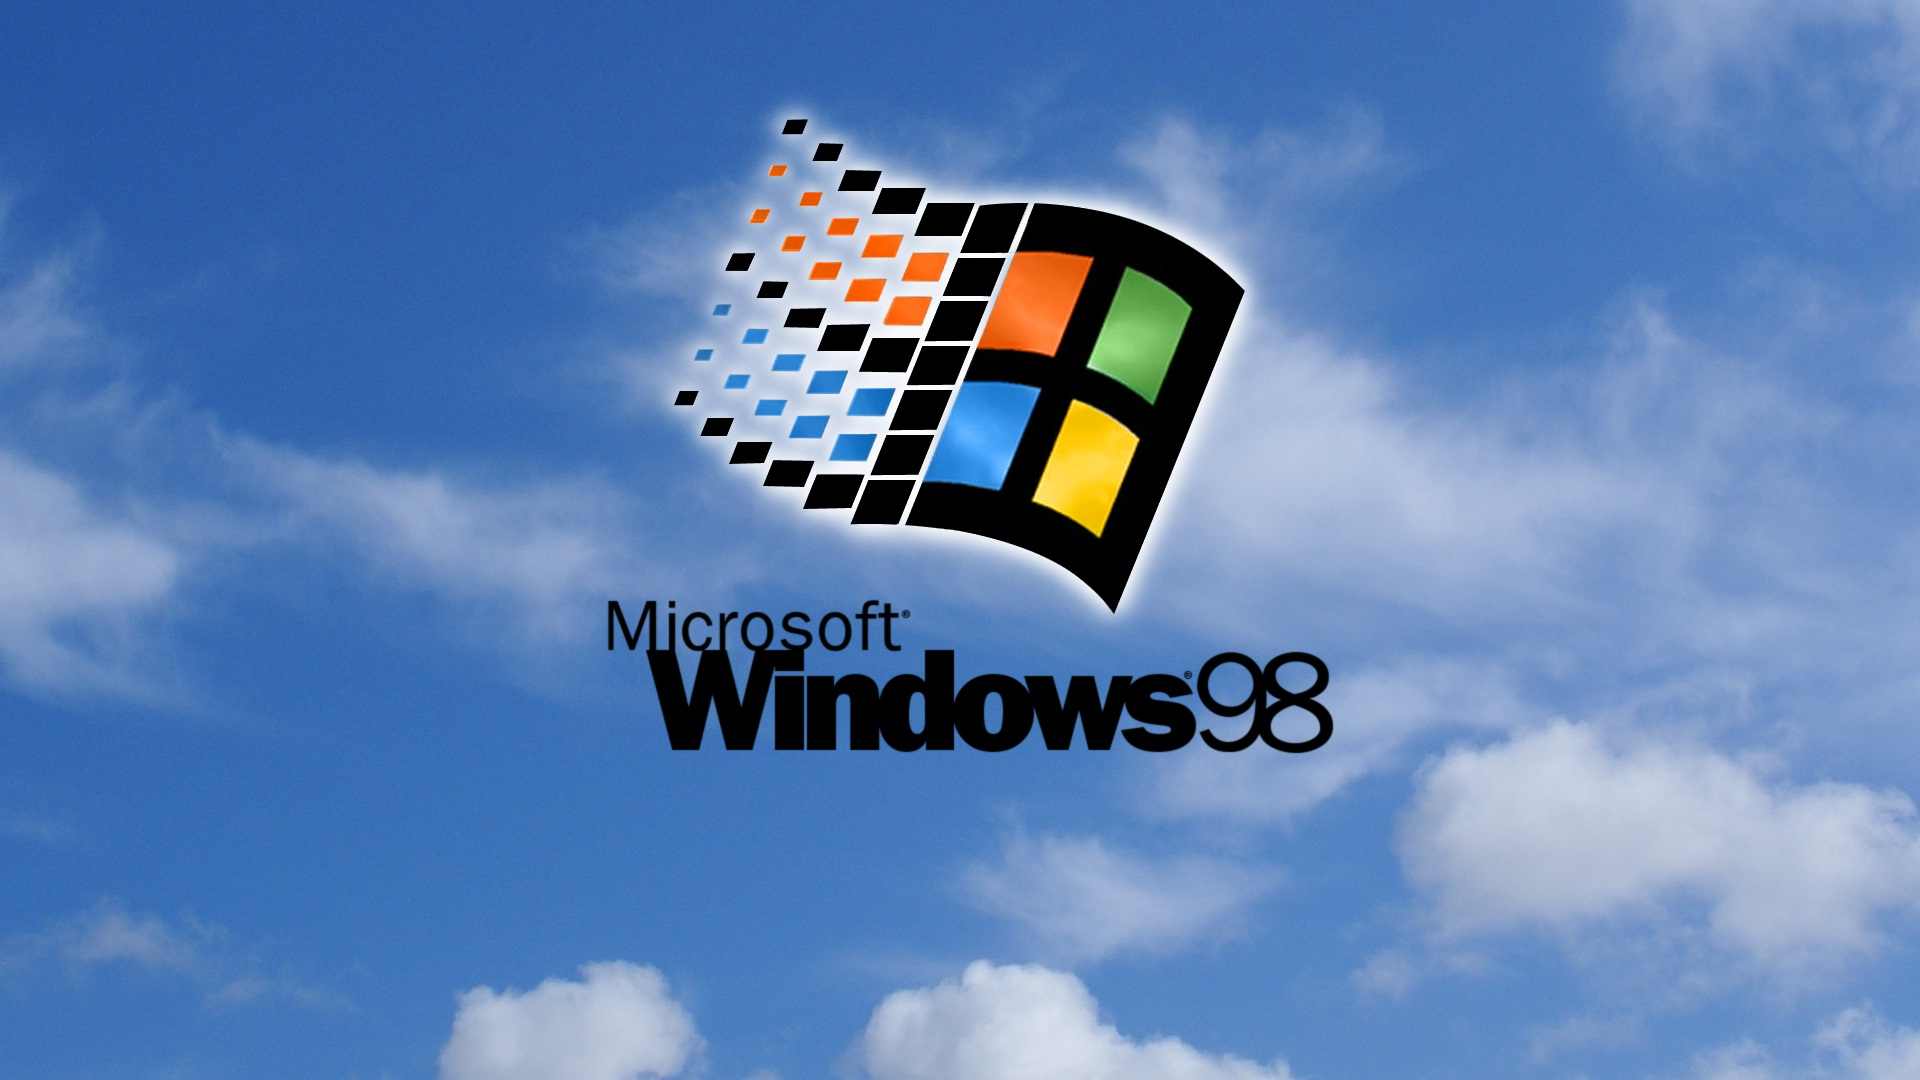 Hình nền Windows 98: Hãy để hình nền của Windows 98 giúp bạn du hành trở lại thời điểm lâu đời và trải nghiệm lại những kỷ niệm ngày xưa. Hãy cùng nhìn lại quá khứ với sự ấm áp và gấp gáp.